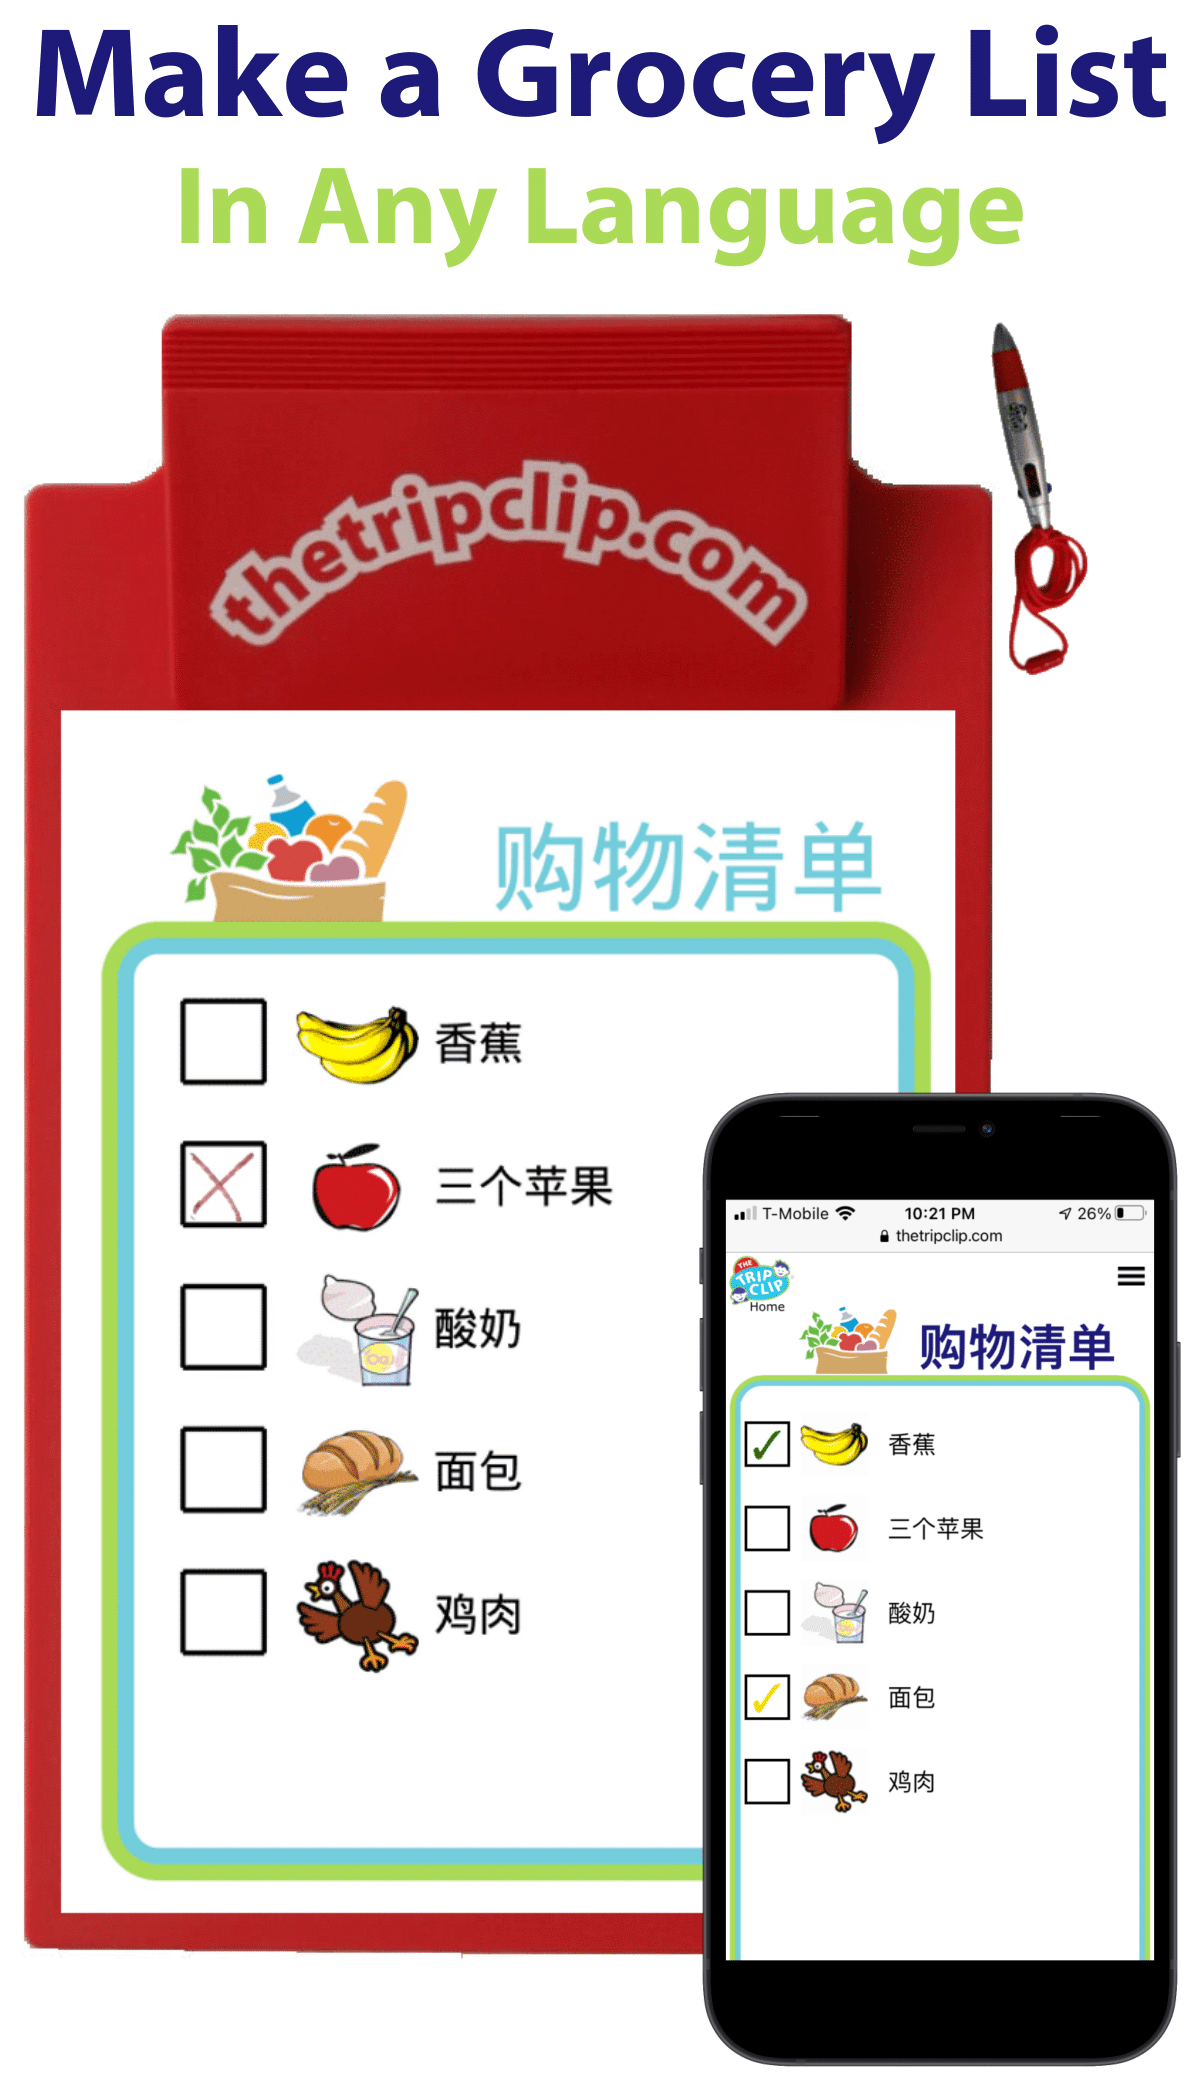 购物清单 picture checklist in chinese for grocery shopping